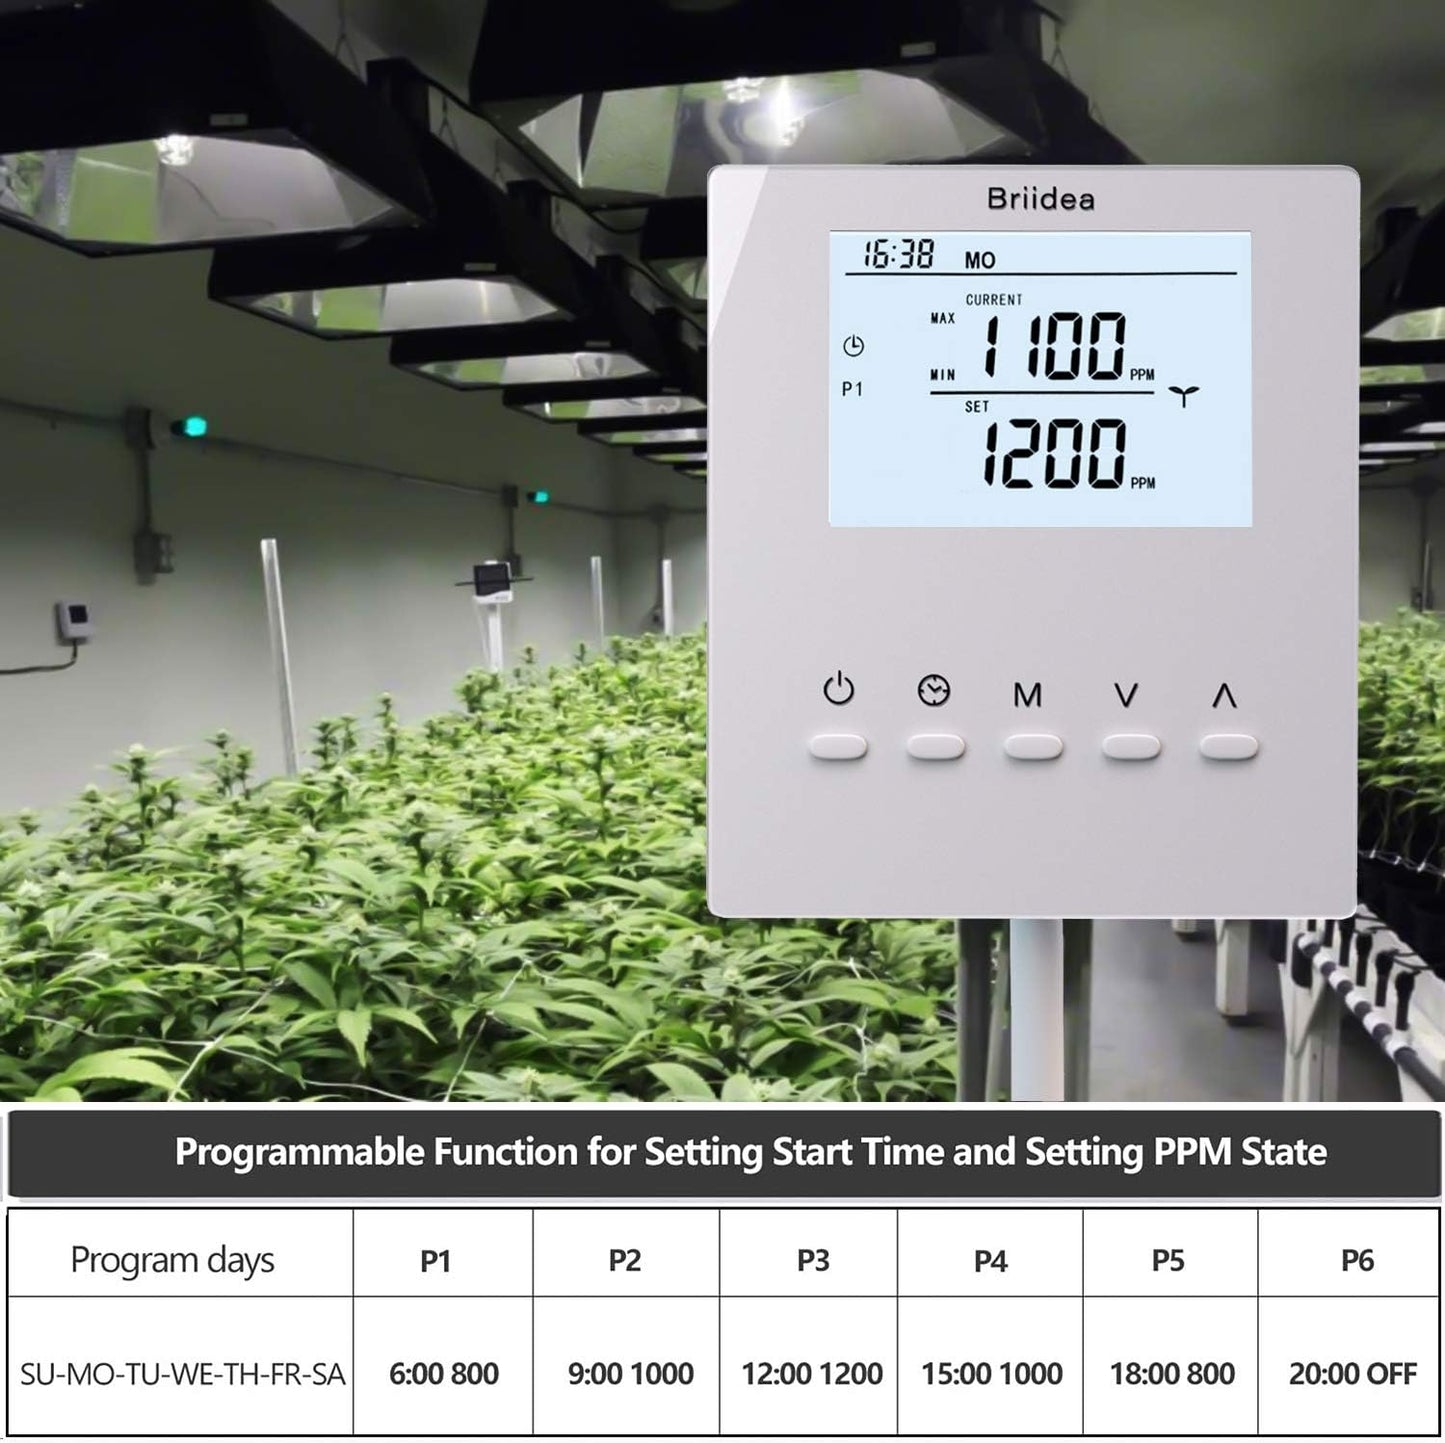 Briidea - Controlador de CO2, monitor de CO2 más nuevo con sensor remoto de CO2, fotocélula para control diurno y nocturno, función programable para evitar residuos de CO2 para invernadero de sala de cultivo